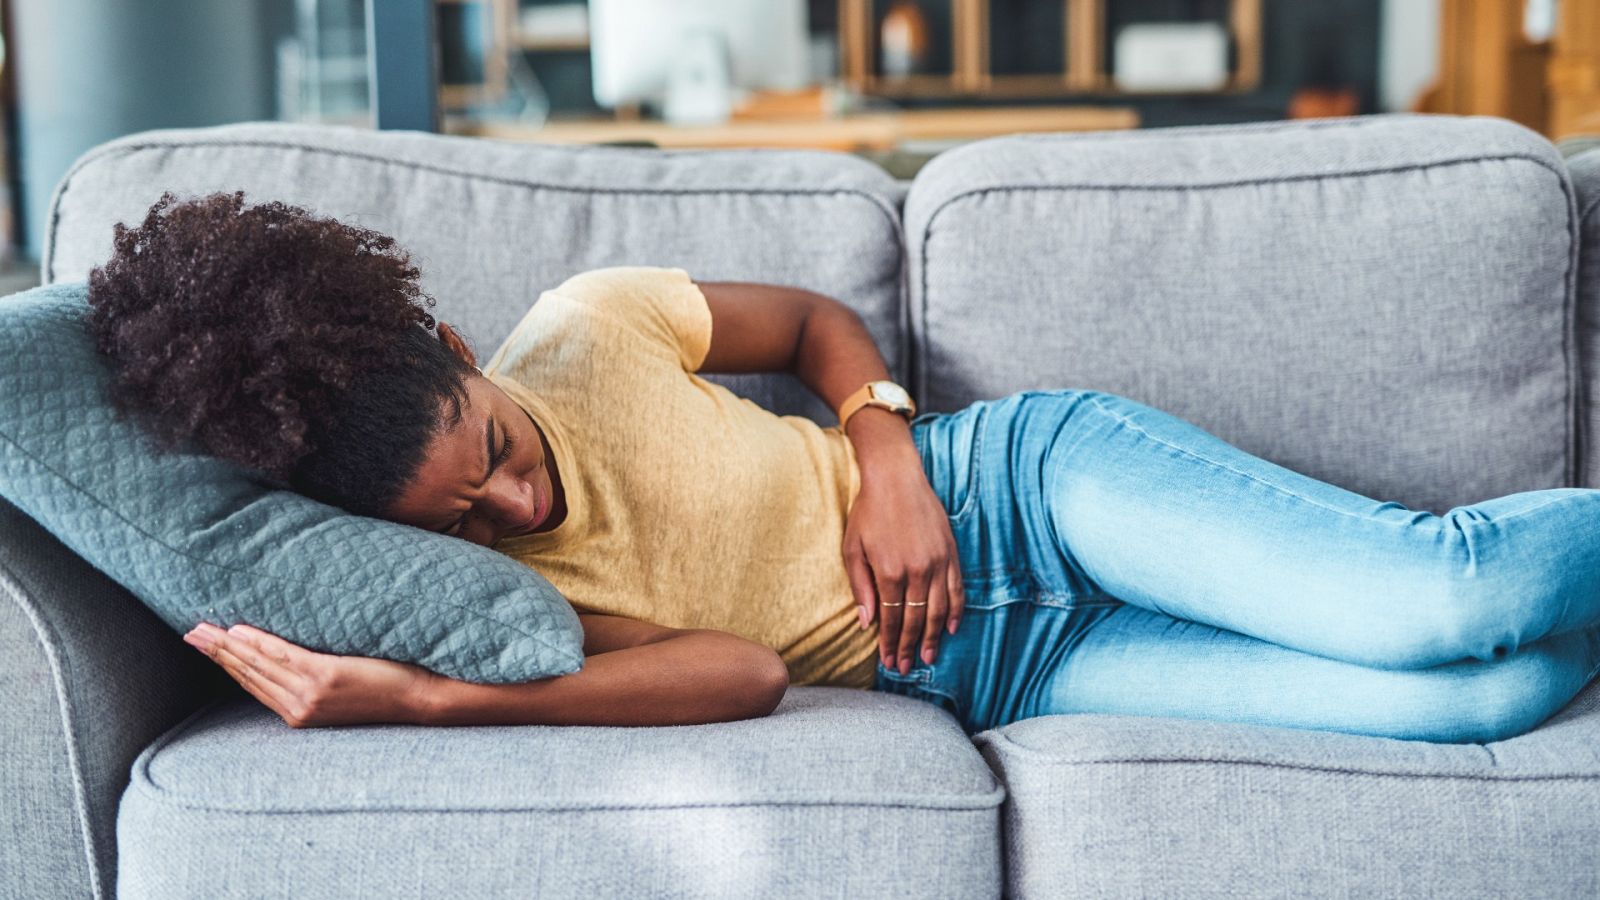 Una mujer sufre dolores menstruales, tumbada en un sofá, en una imagen de archivo